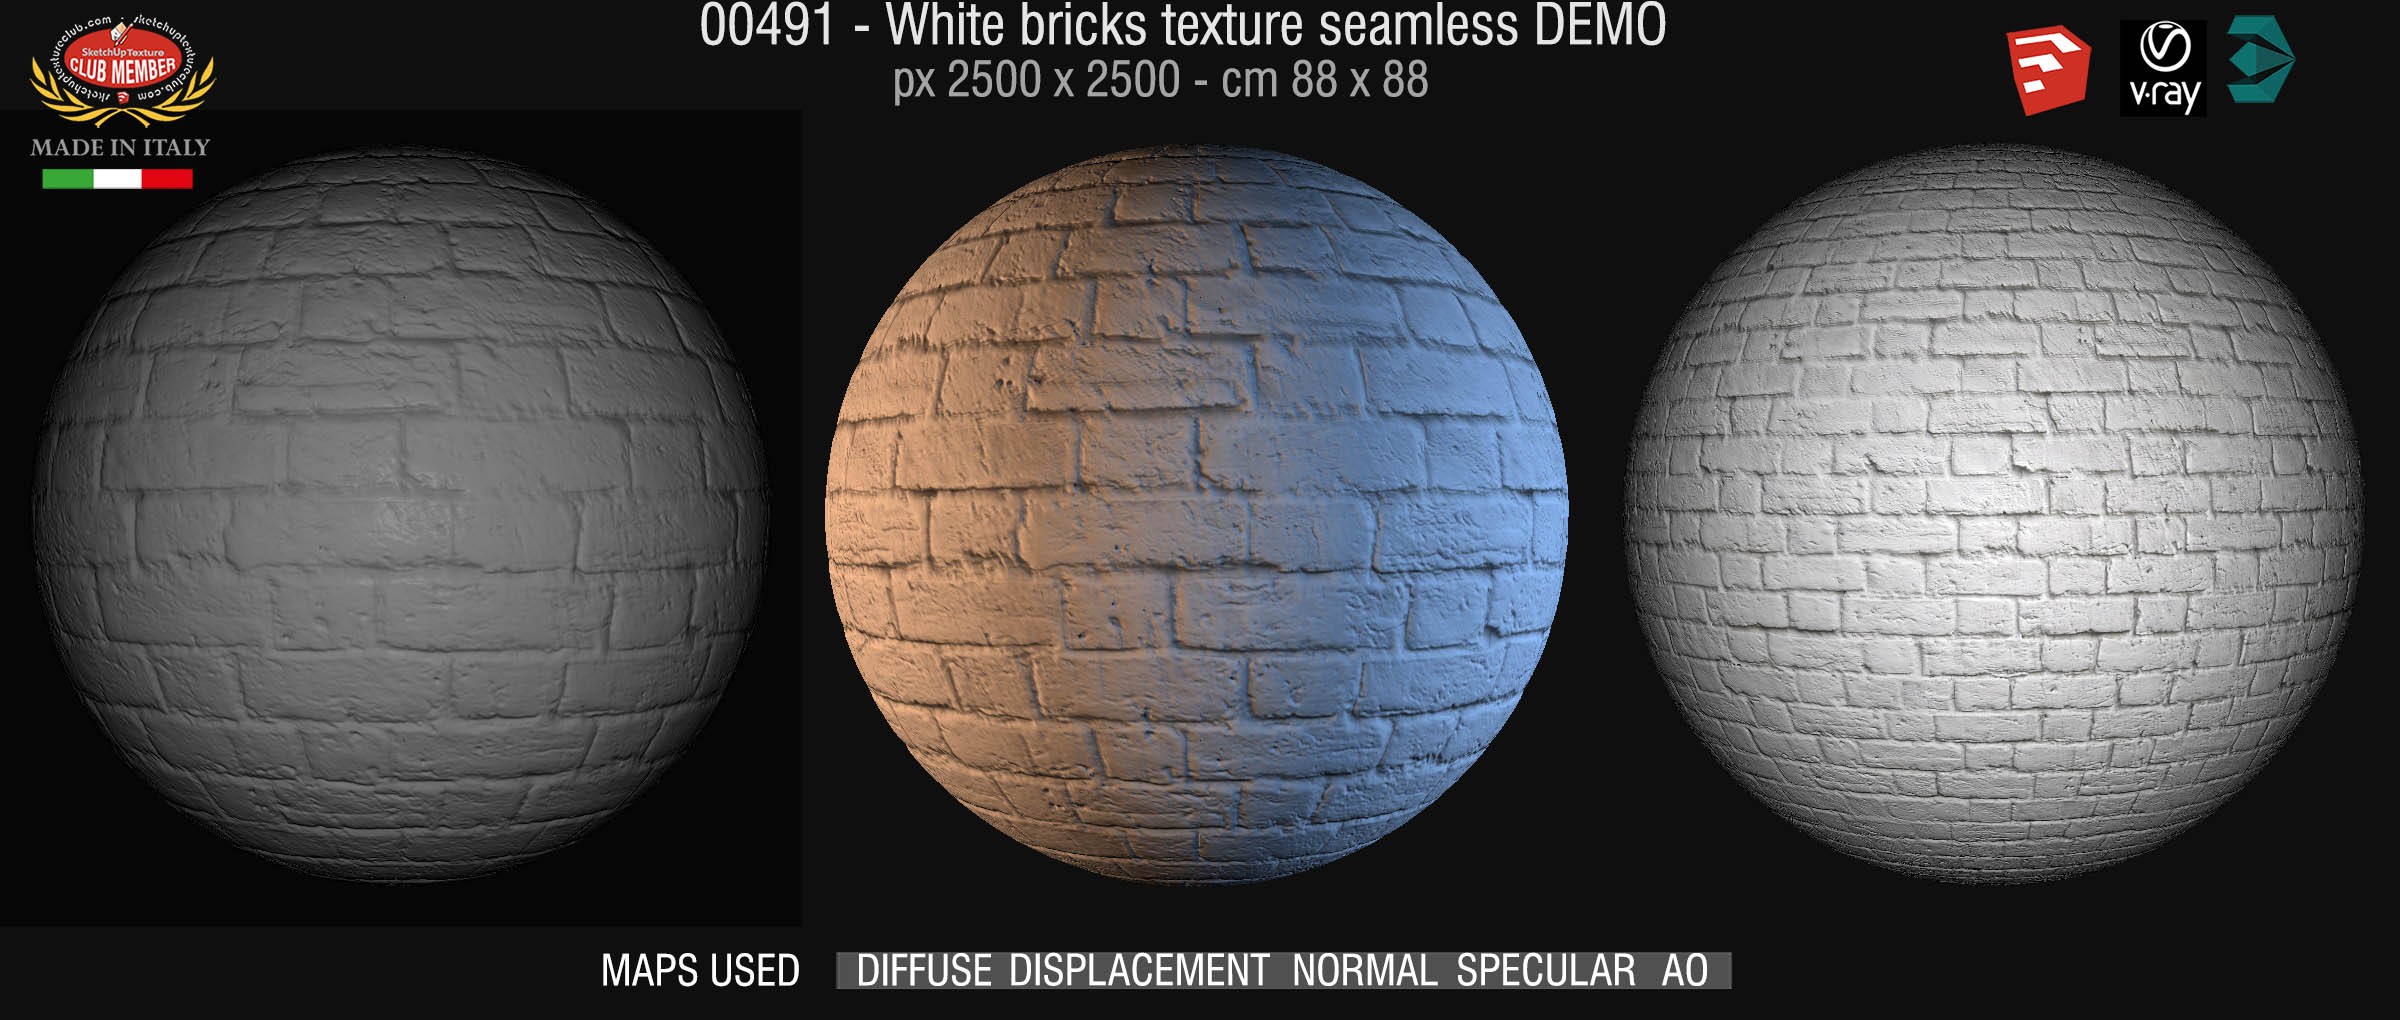 00491 White bricks texture seamless + maps DEMO